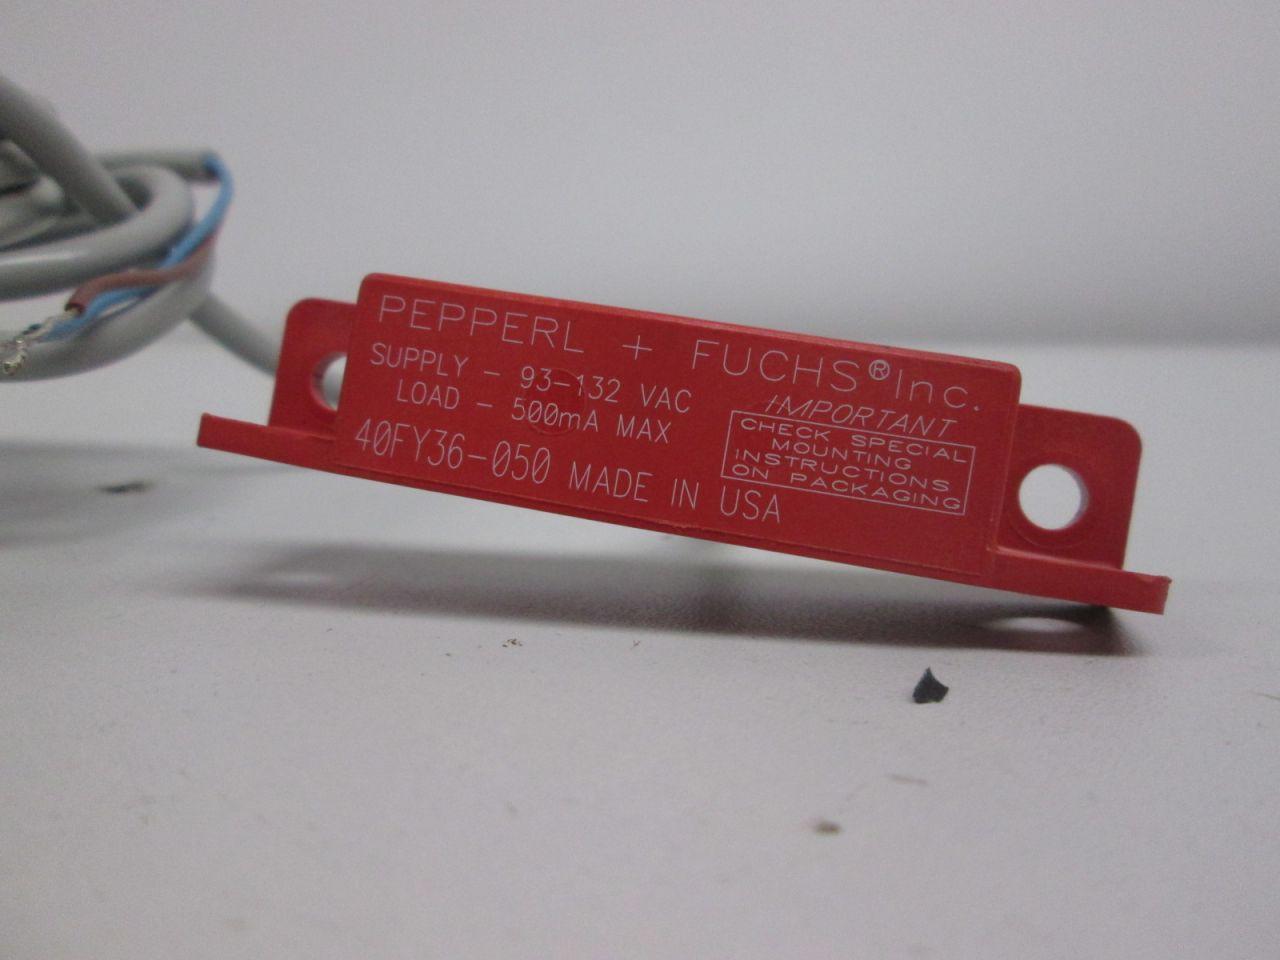 new Pepperl Fuchs 40fy36-050 Magnetic Sensor for sale online 